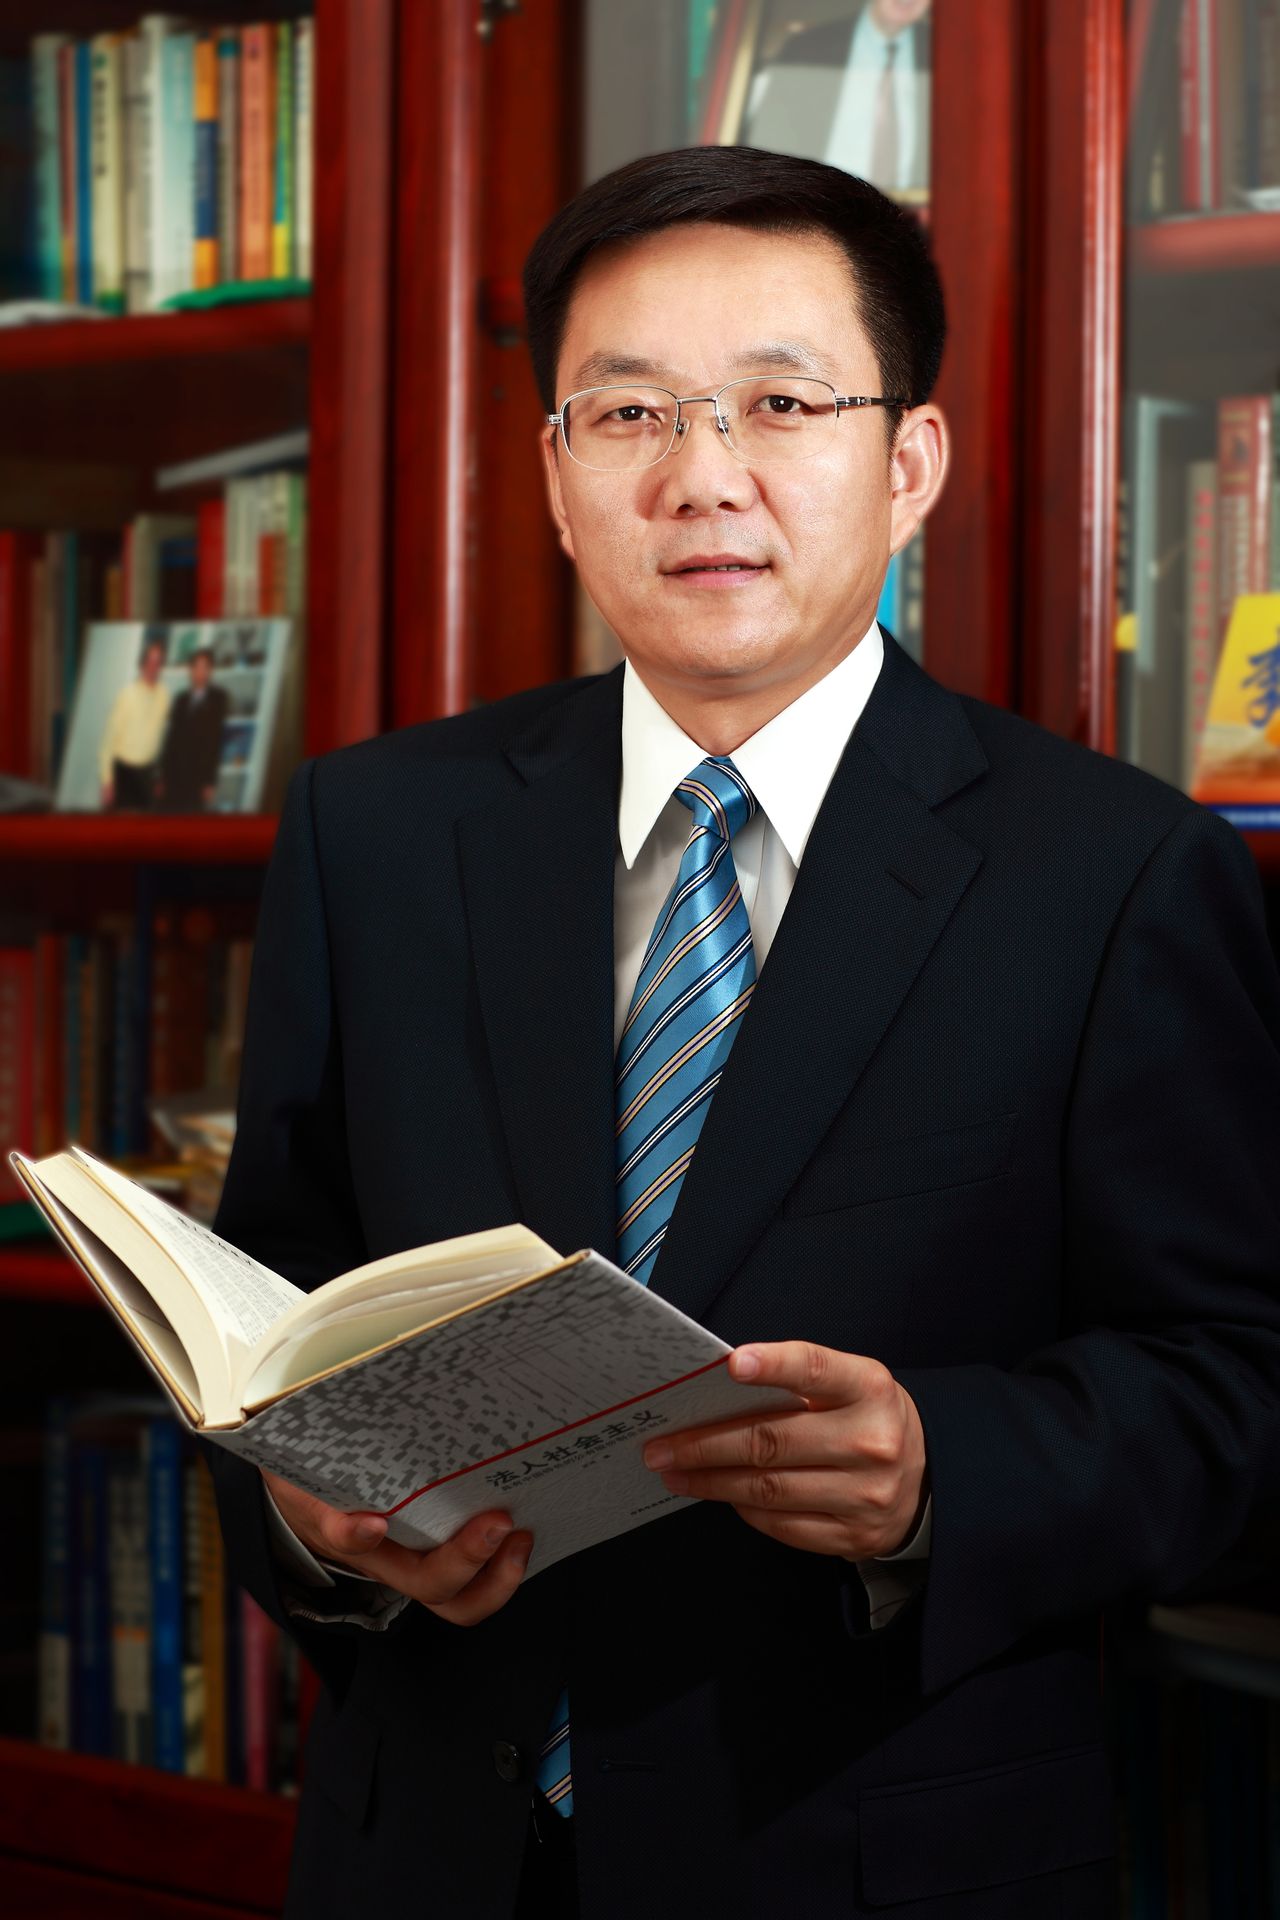 李小牧(北京第二外國語學院副校長)